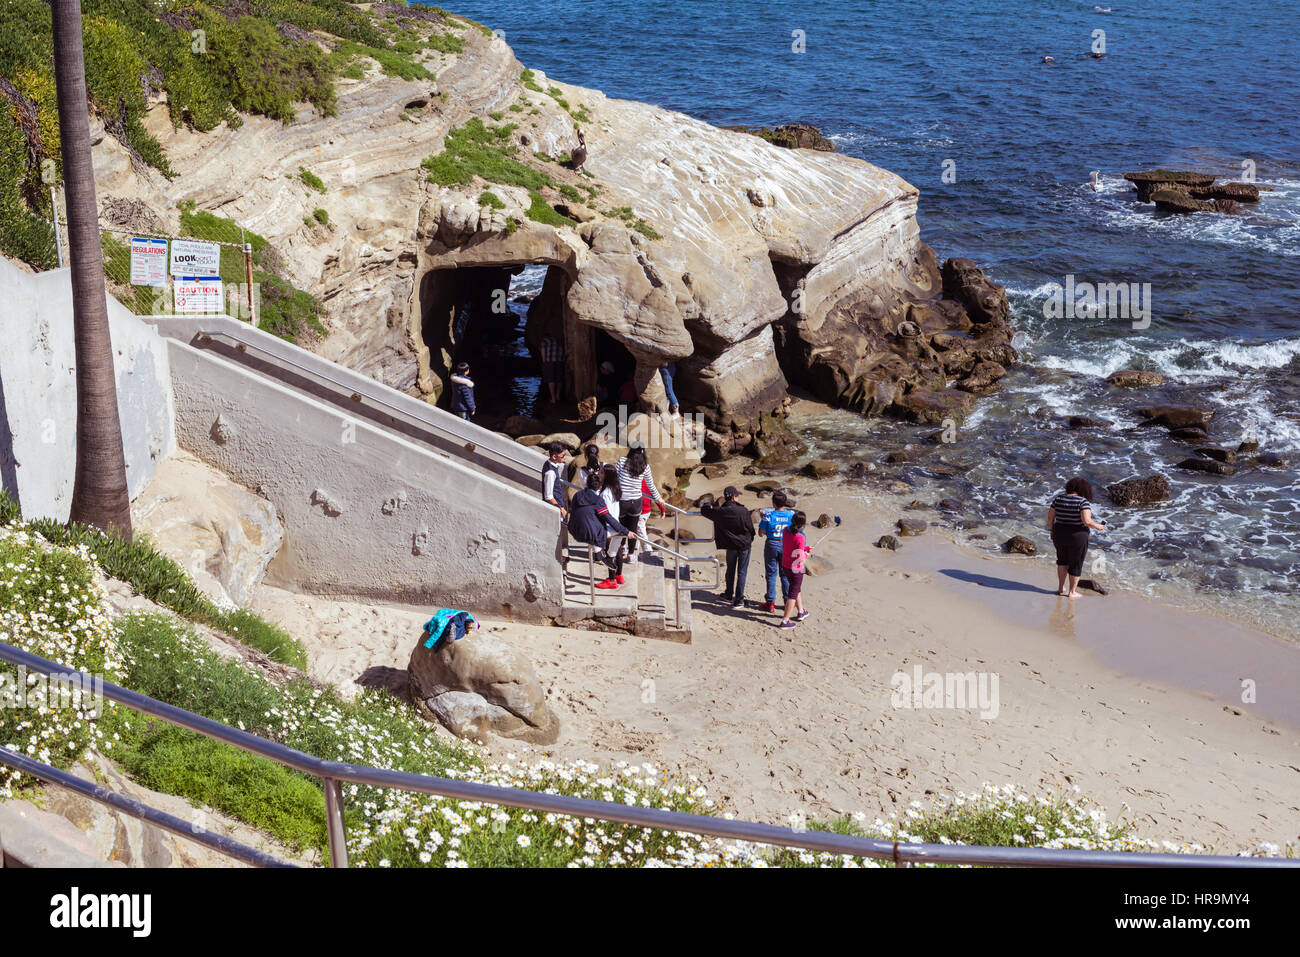 People entering a sea cave at the La Jolla Cove Beach. La Jolla, California. Stock Photo